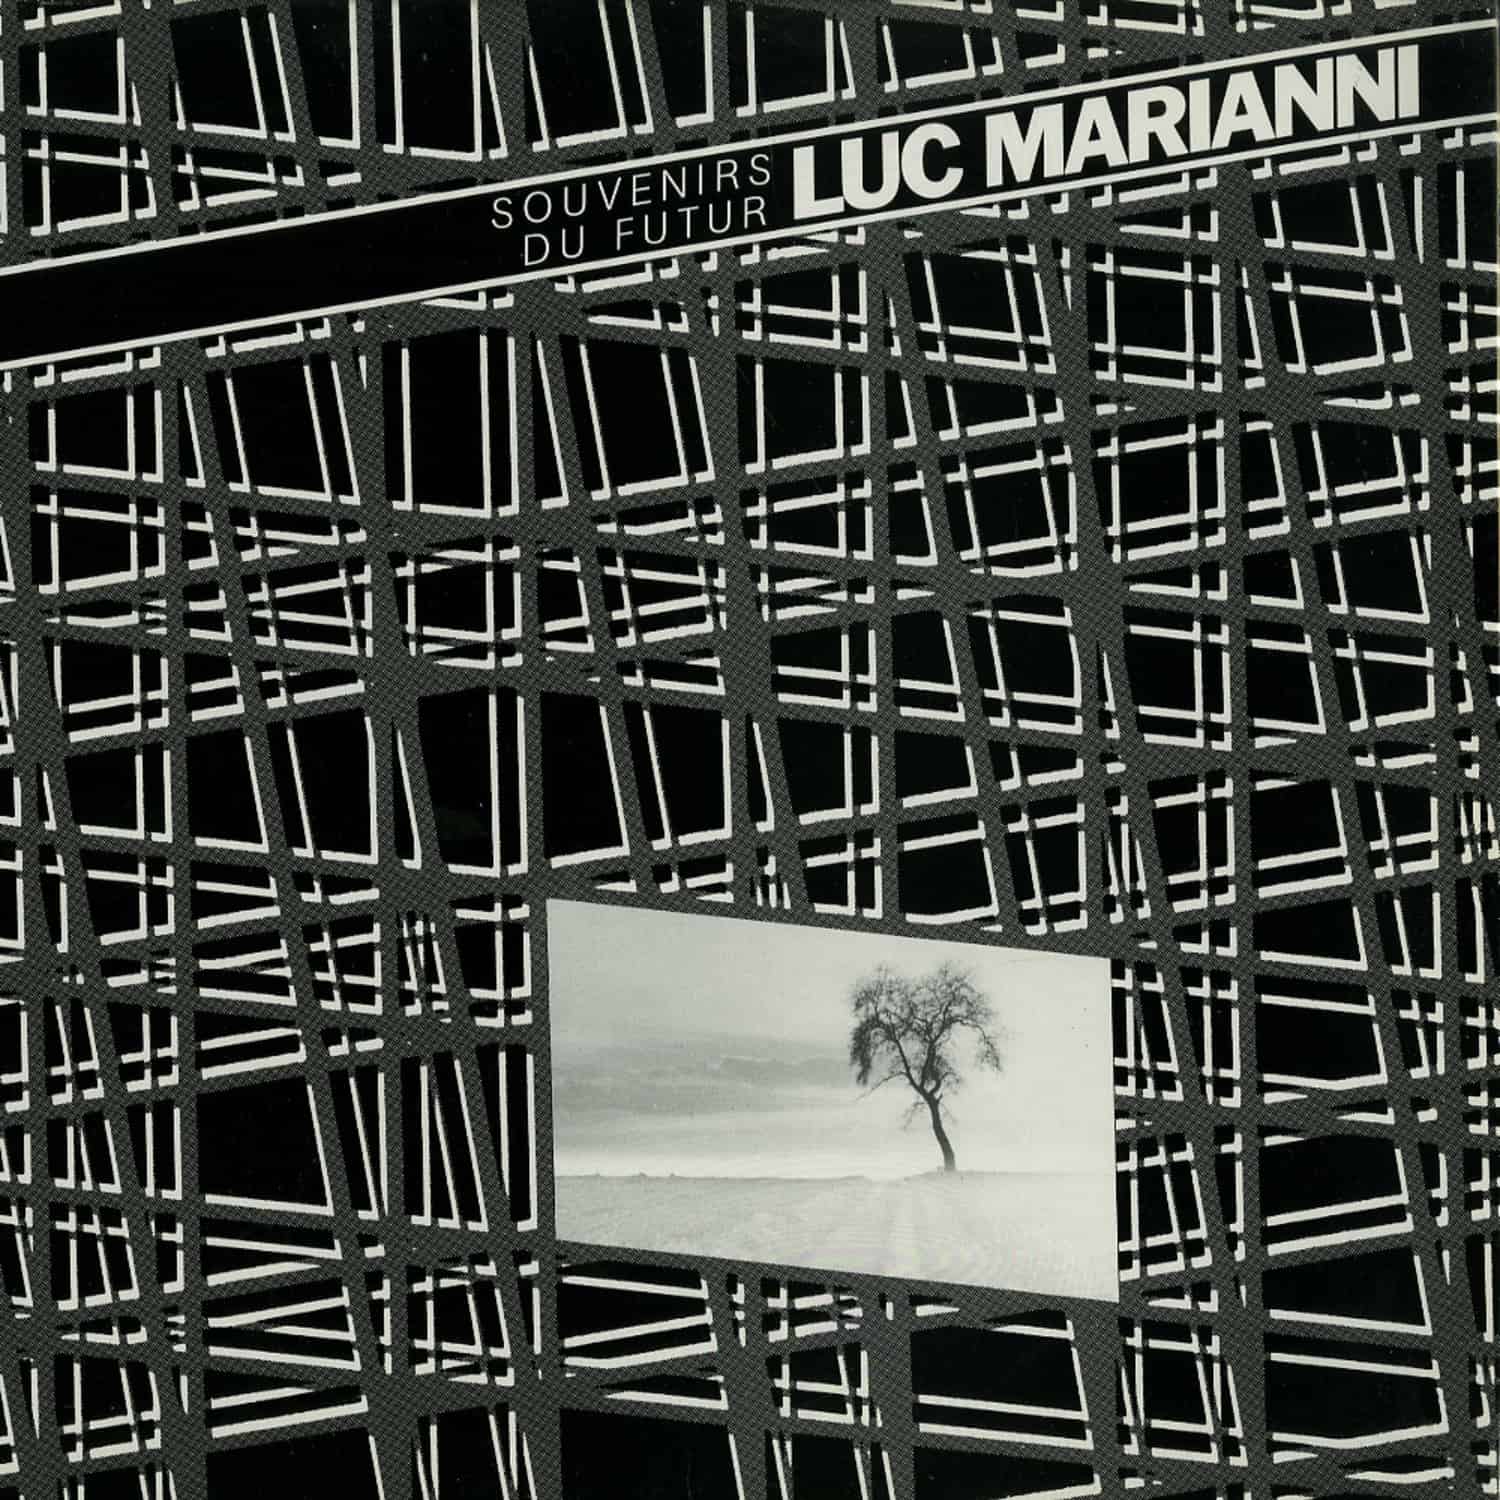 Luc Marianni - SOUVENIRS DU FUTUR 